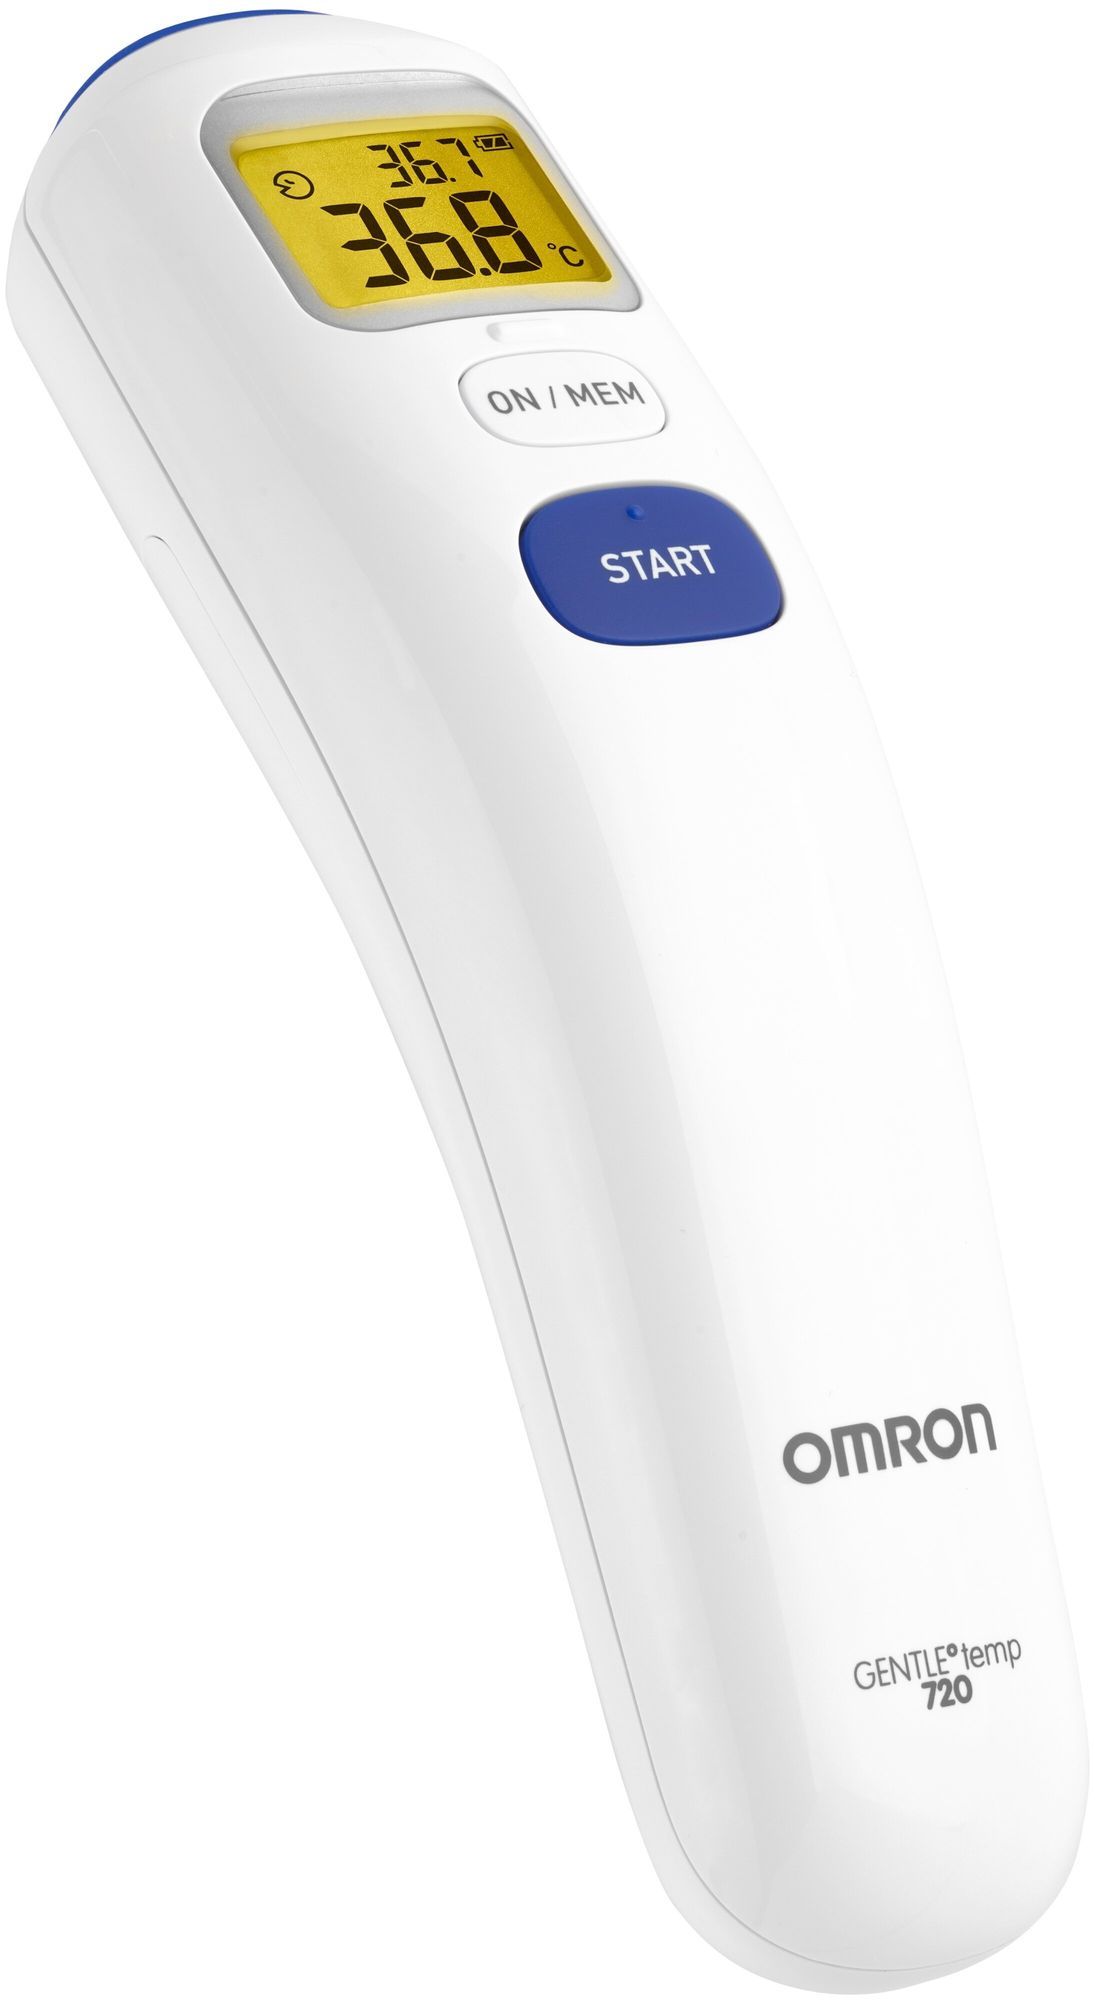 Термометр OMRON Gentle Temp 720 (MC-720-E) (бесконтактный) термометр электронный omron gentle temp 720 mc 720 e инфракрасный память звуковой сигнал белый